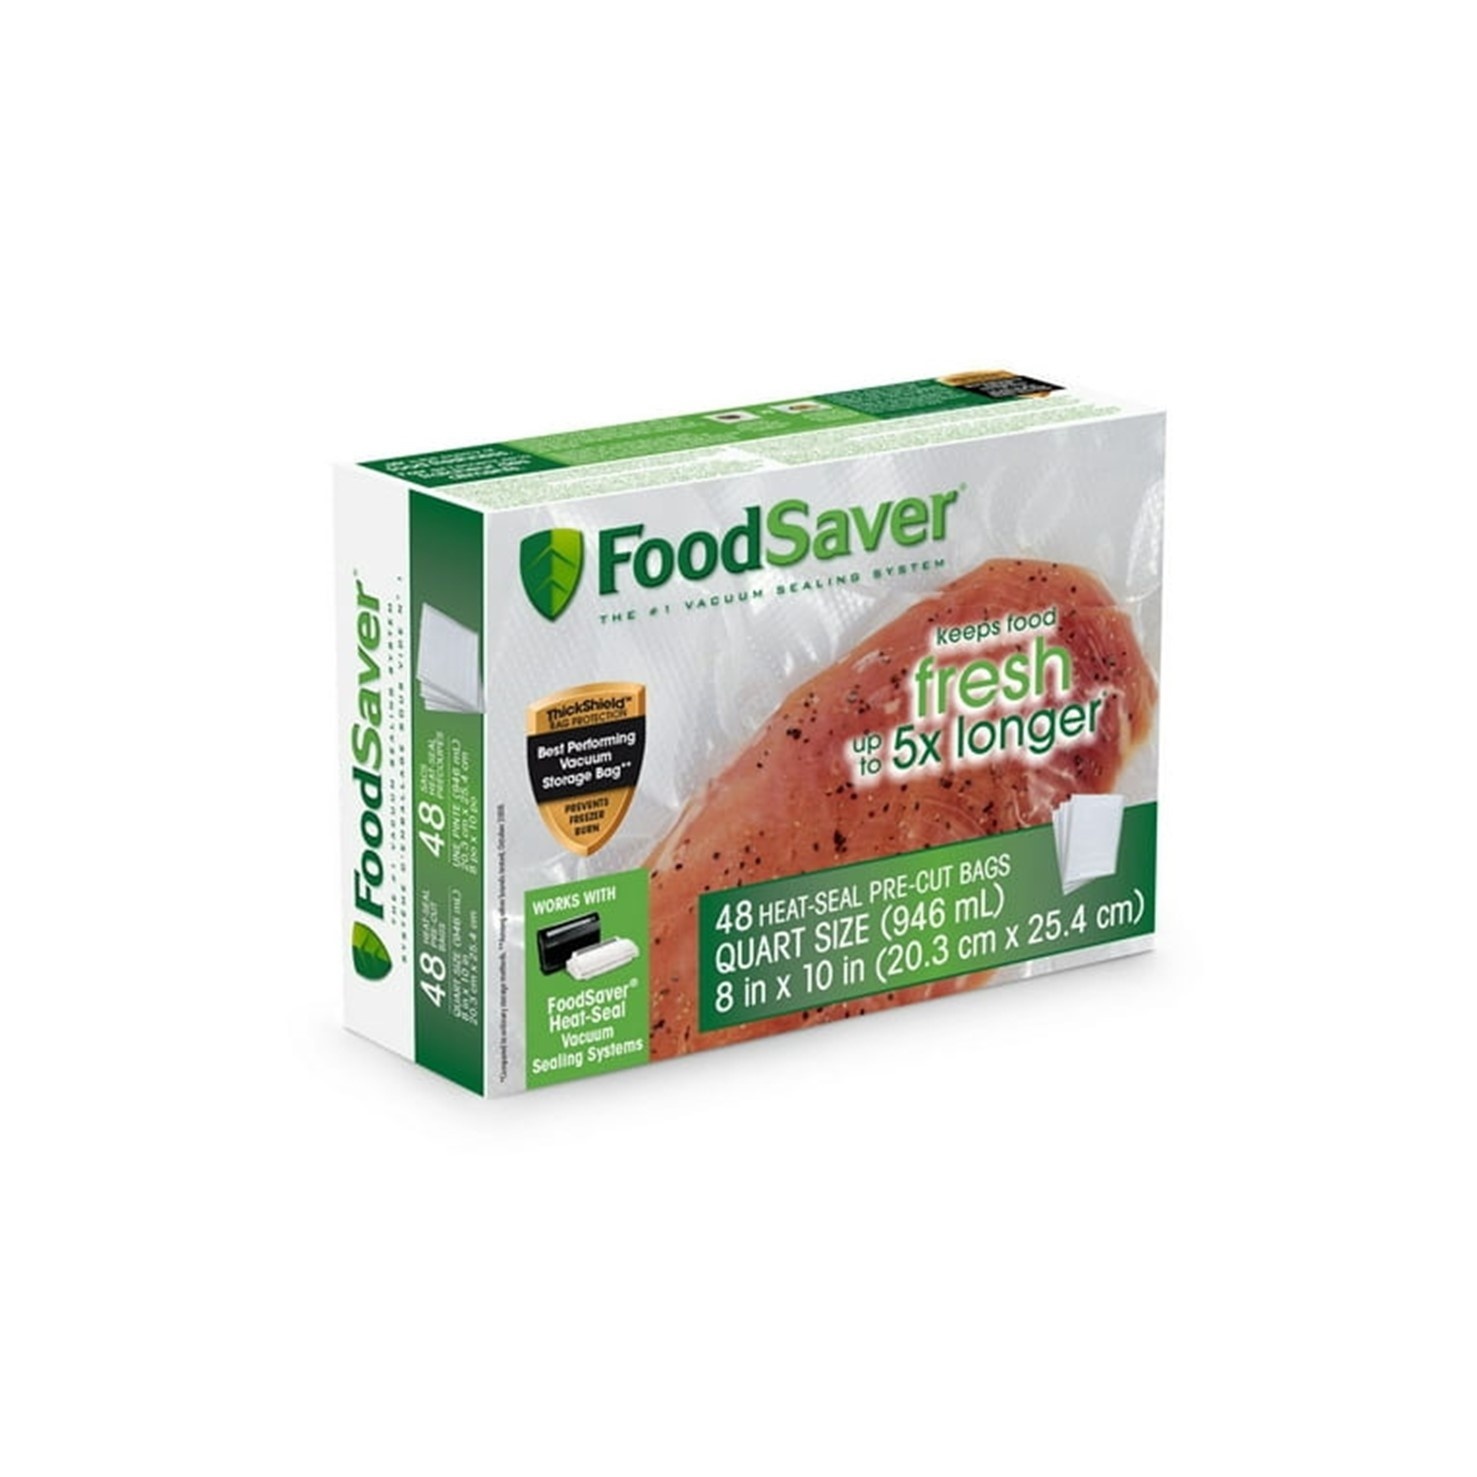 Foodsaver Quart Size Heat-Seal Vacuum Sealer Bags, Count